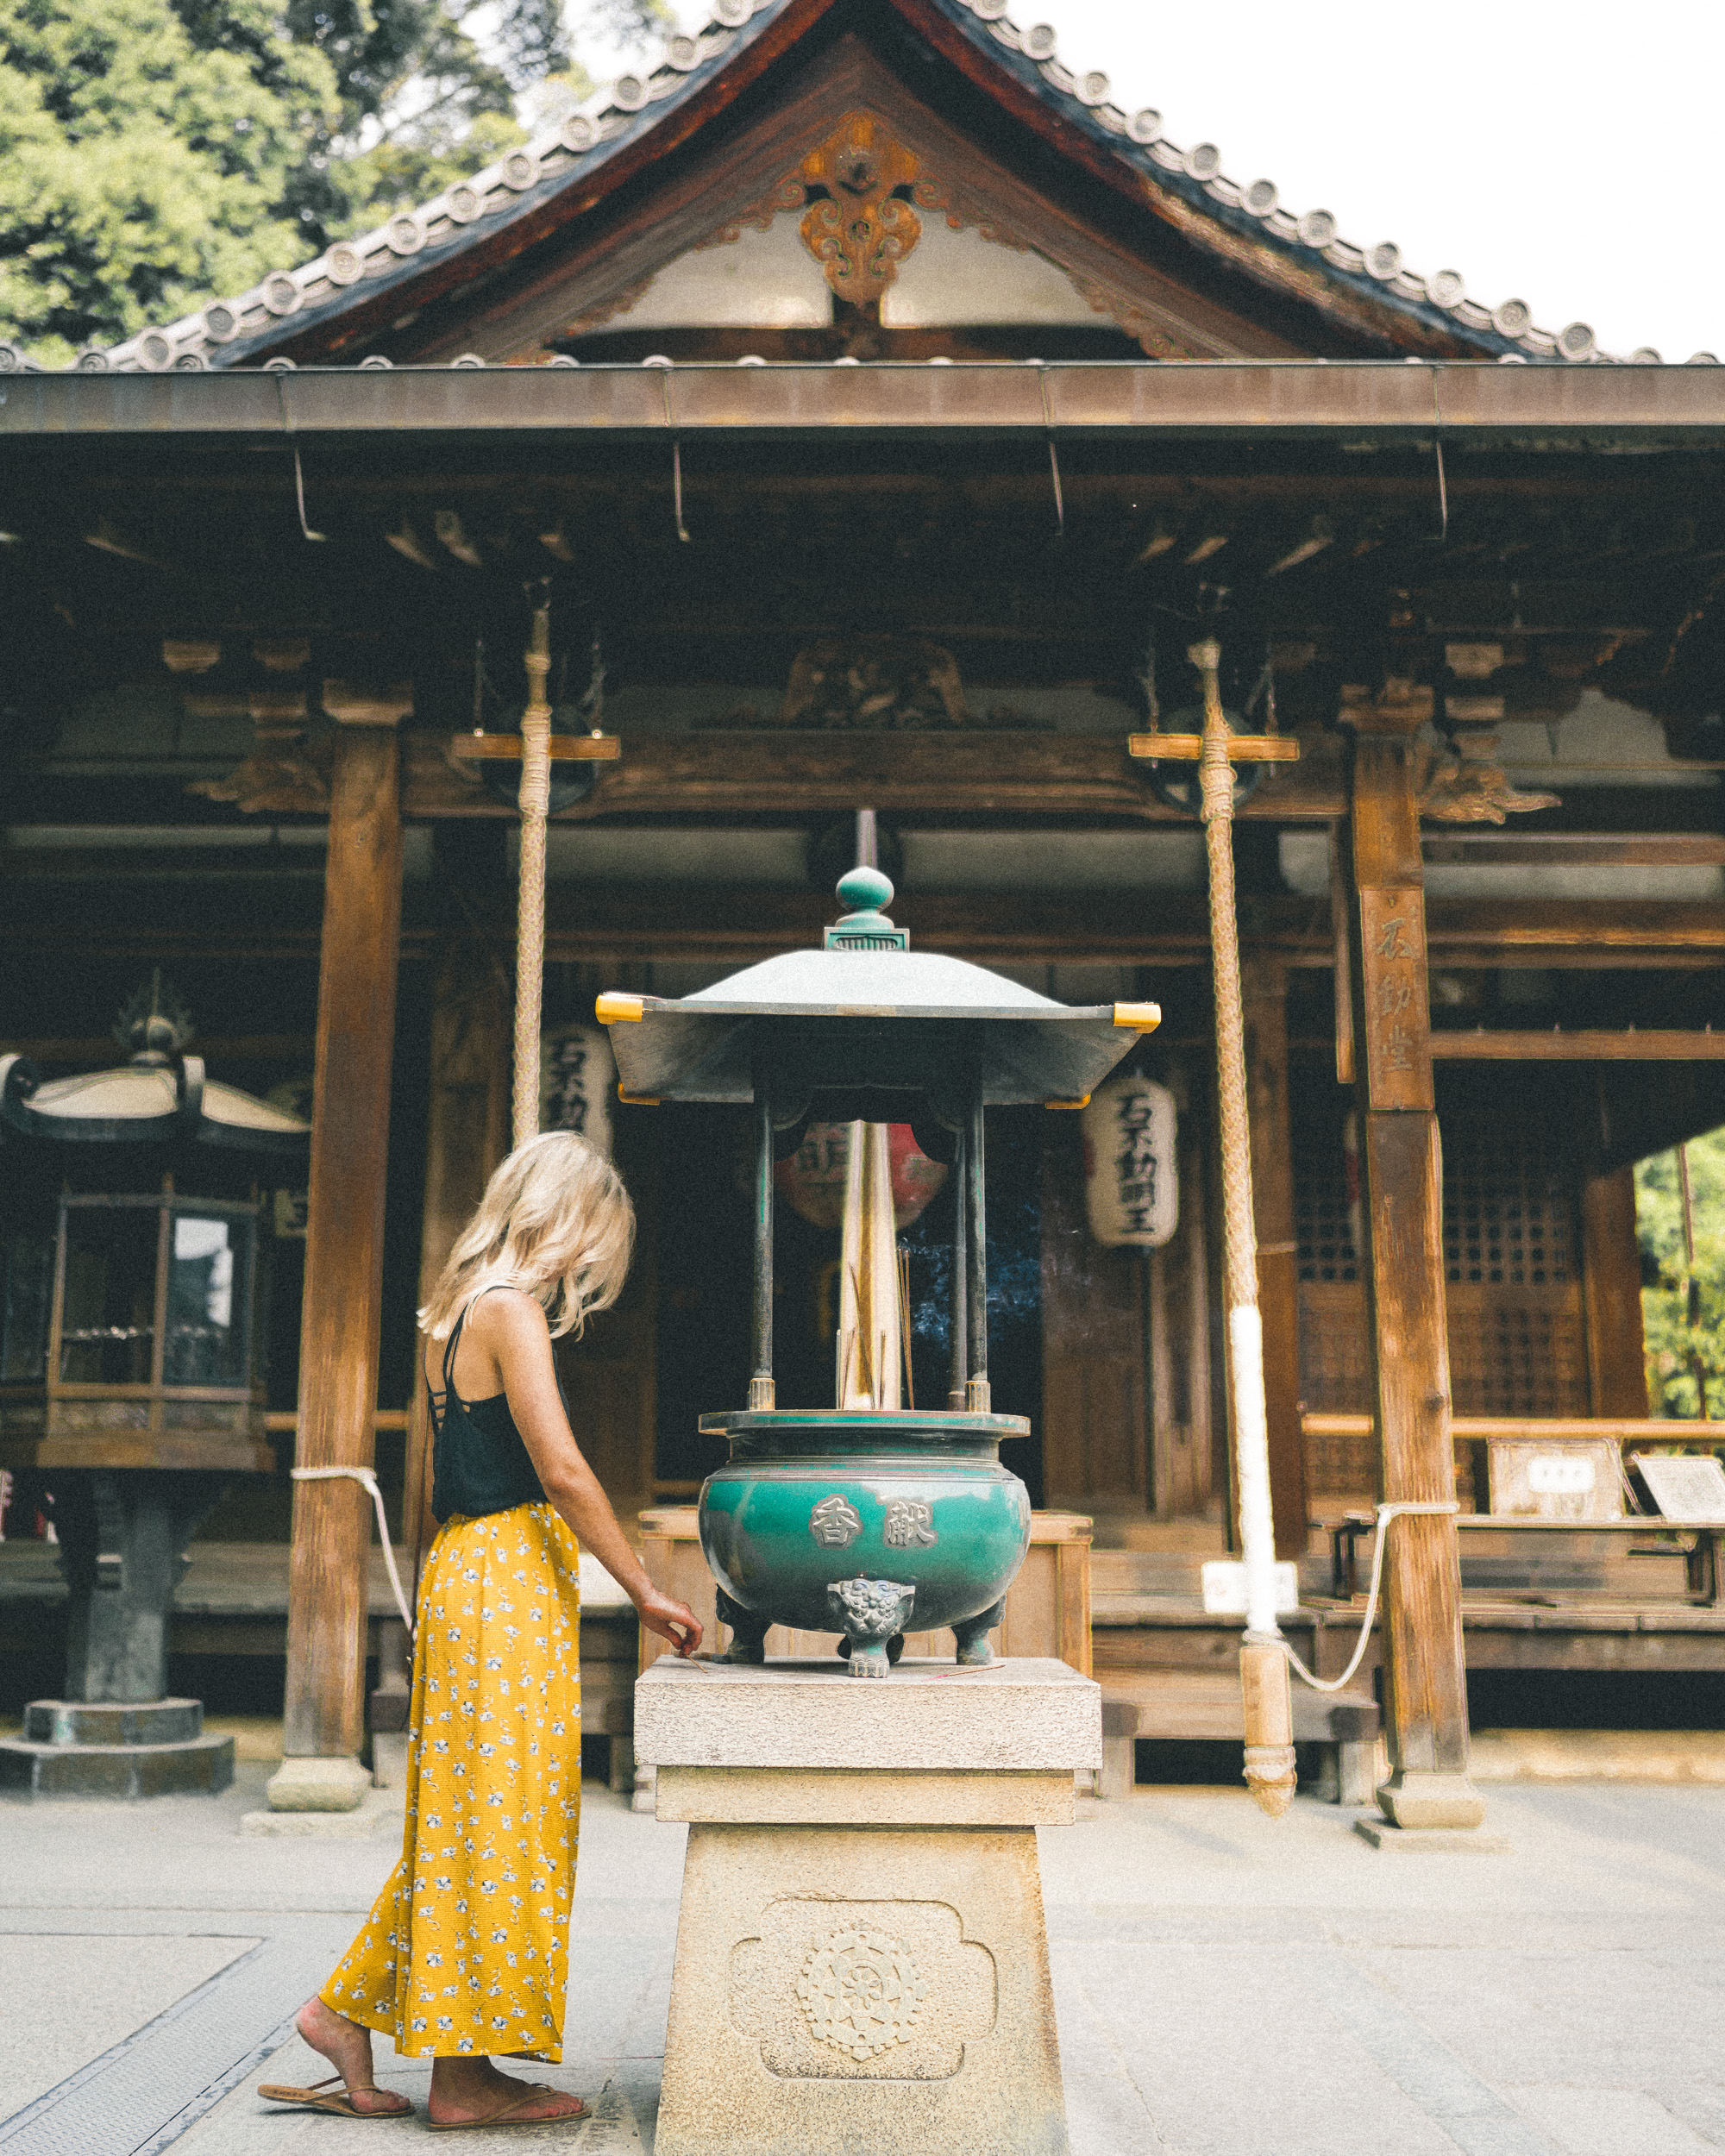 Shrine in Kyoto, Japan 